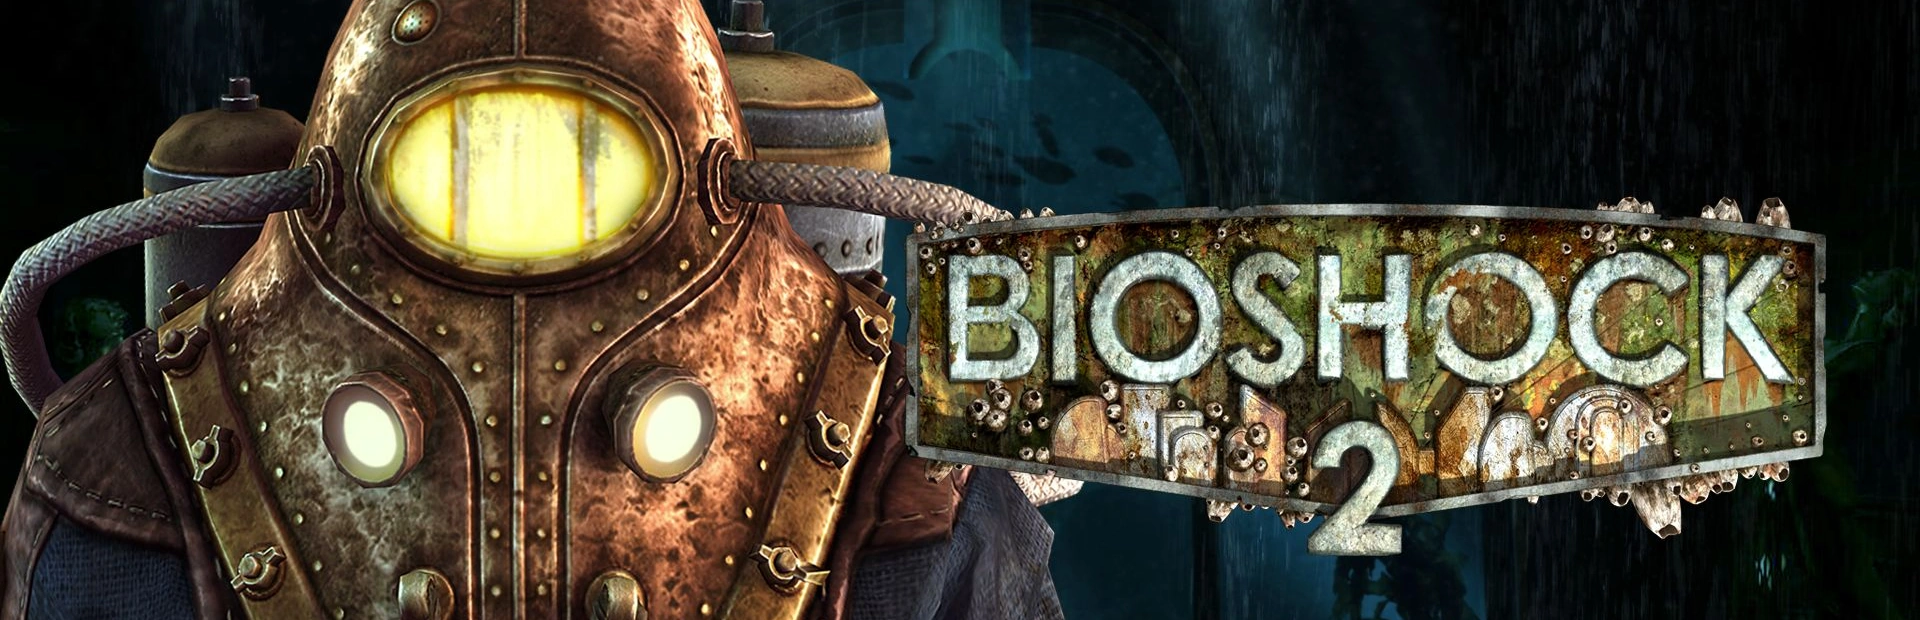 BioShock 2 Remastered.banner3